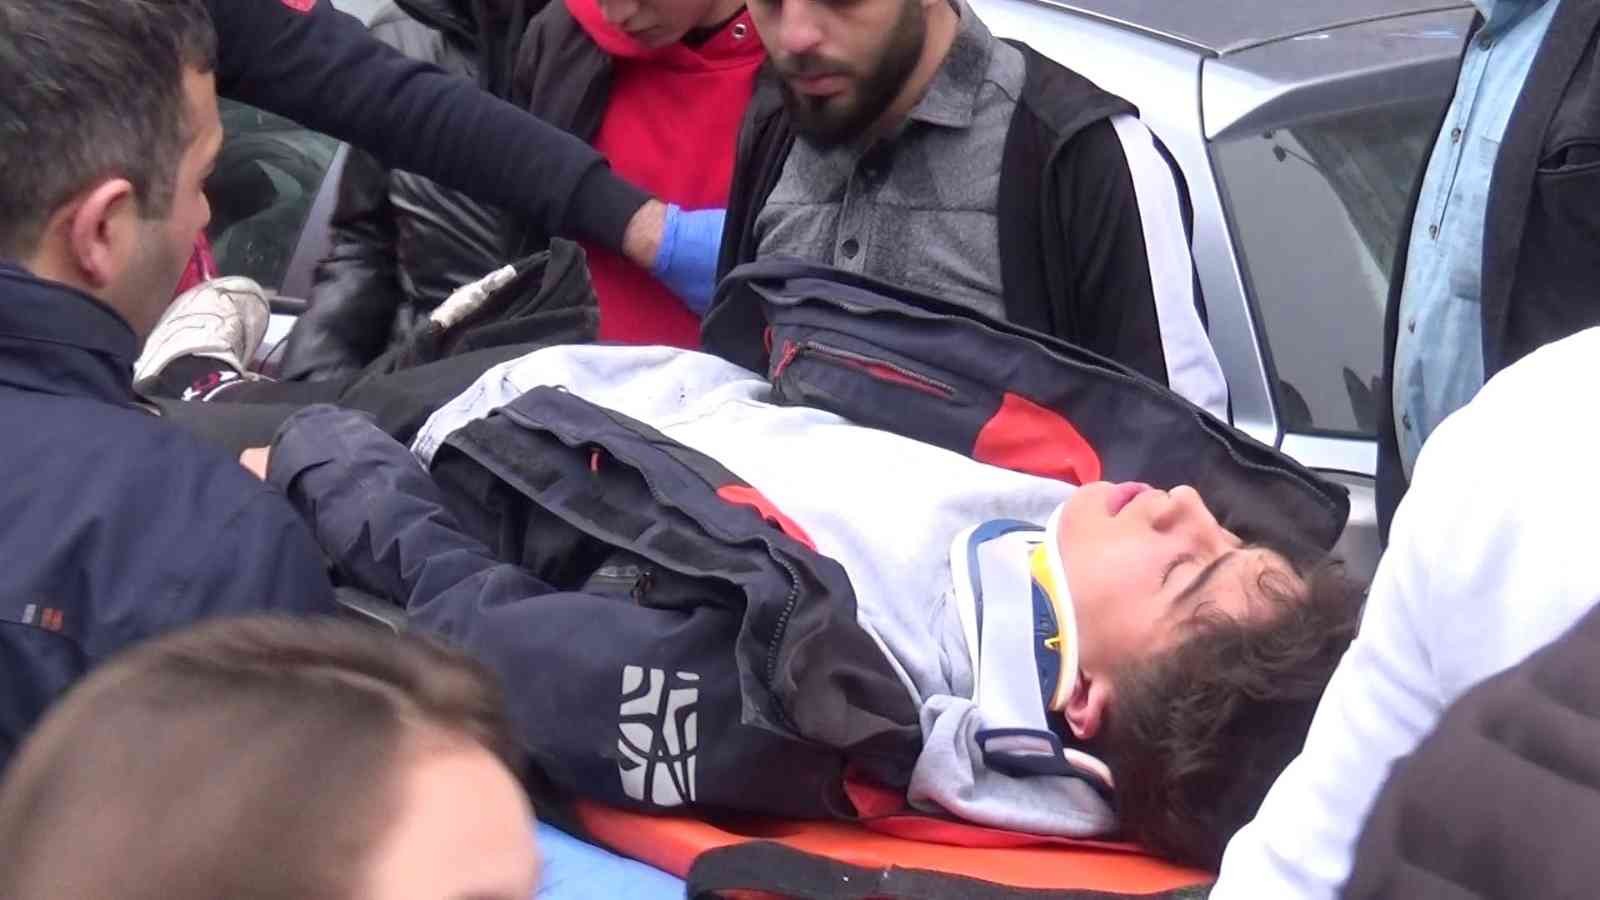 Sultangazi’de işe başladığı gün kaza yapan motokuryenin bacağı kırıldı